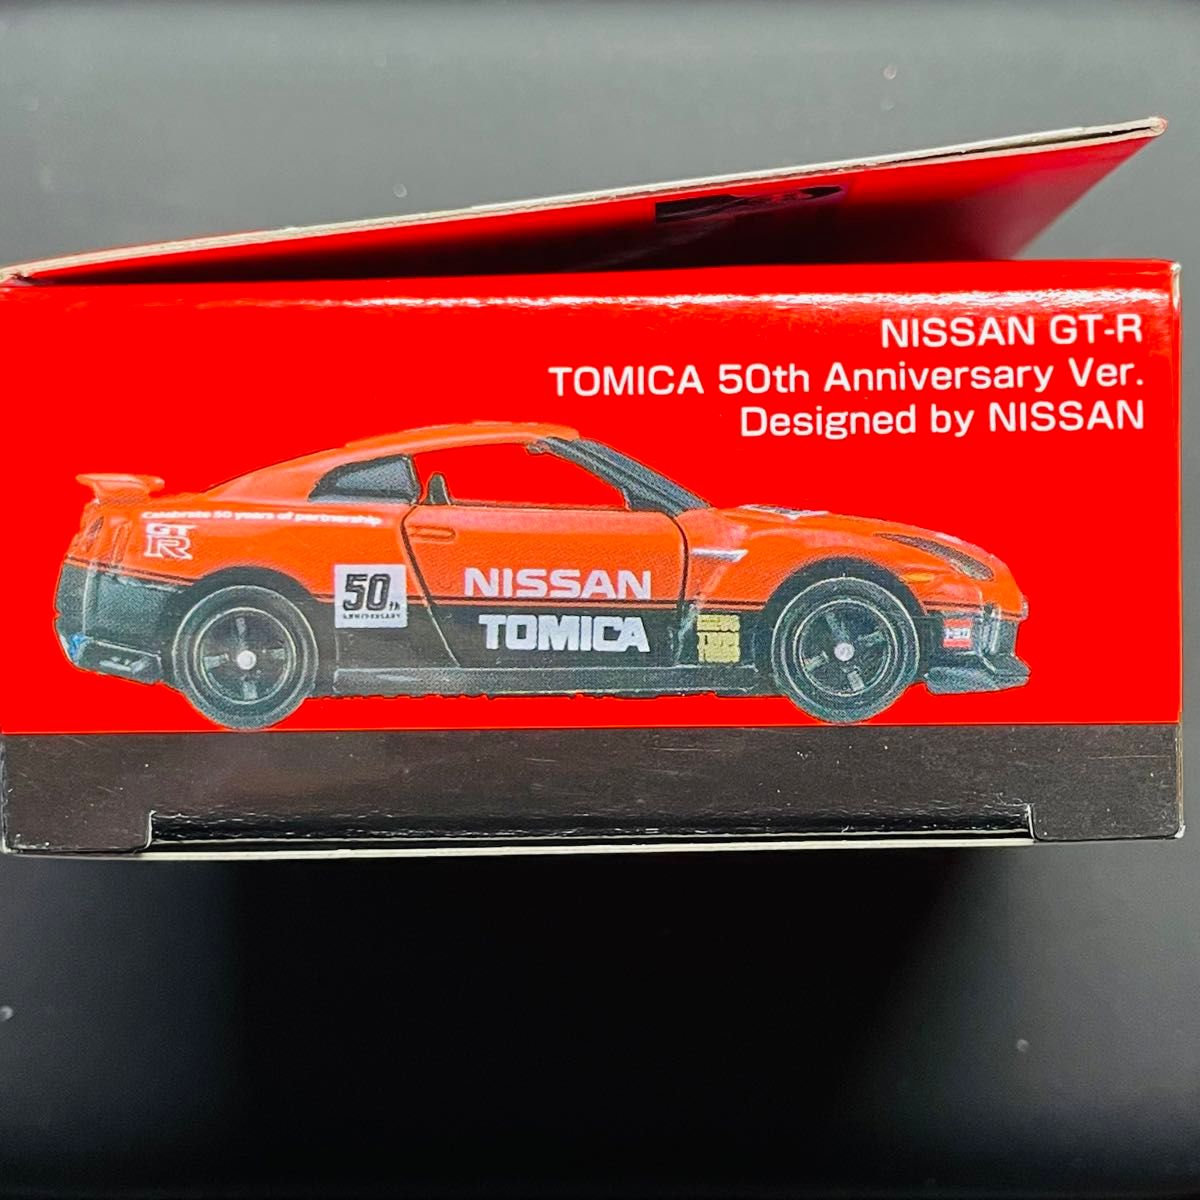 トミカ　日産 GT-R トミカ50周年記念仕様 designed by NISSAN